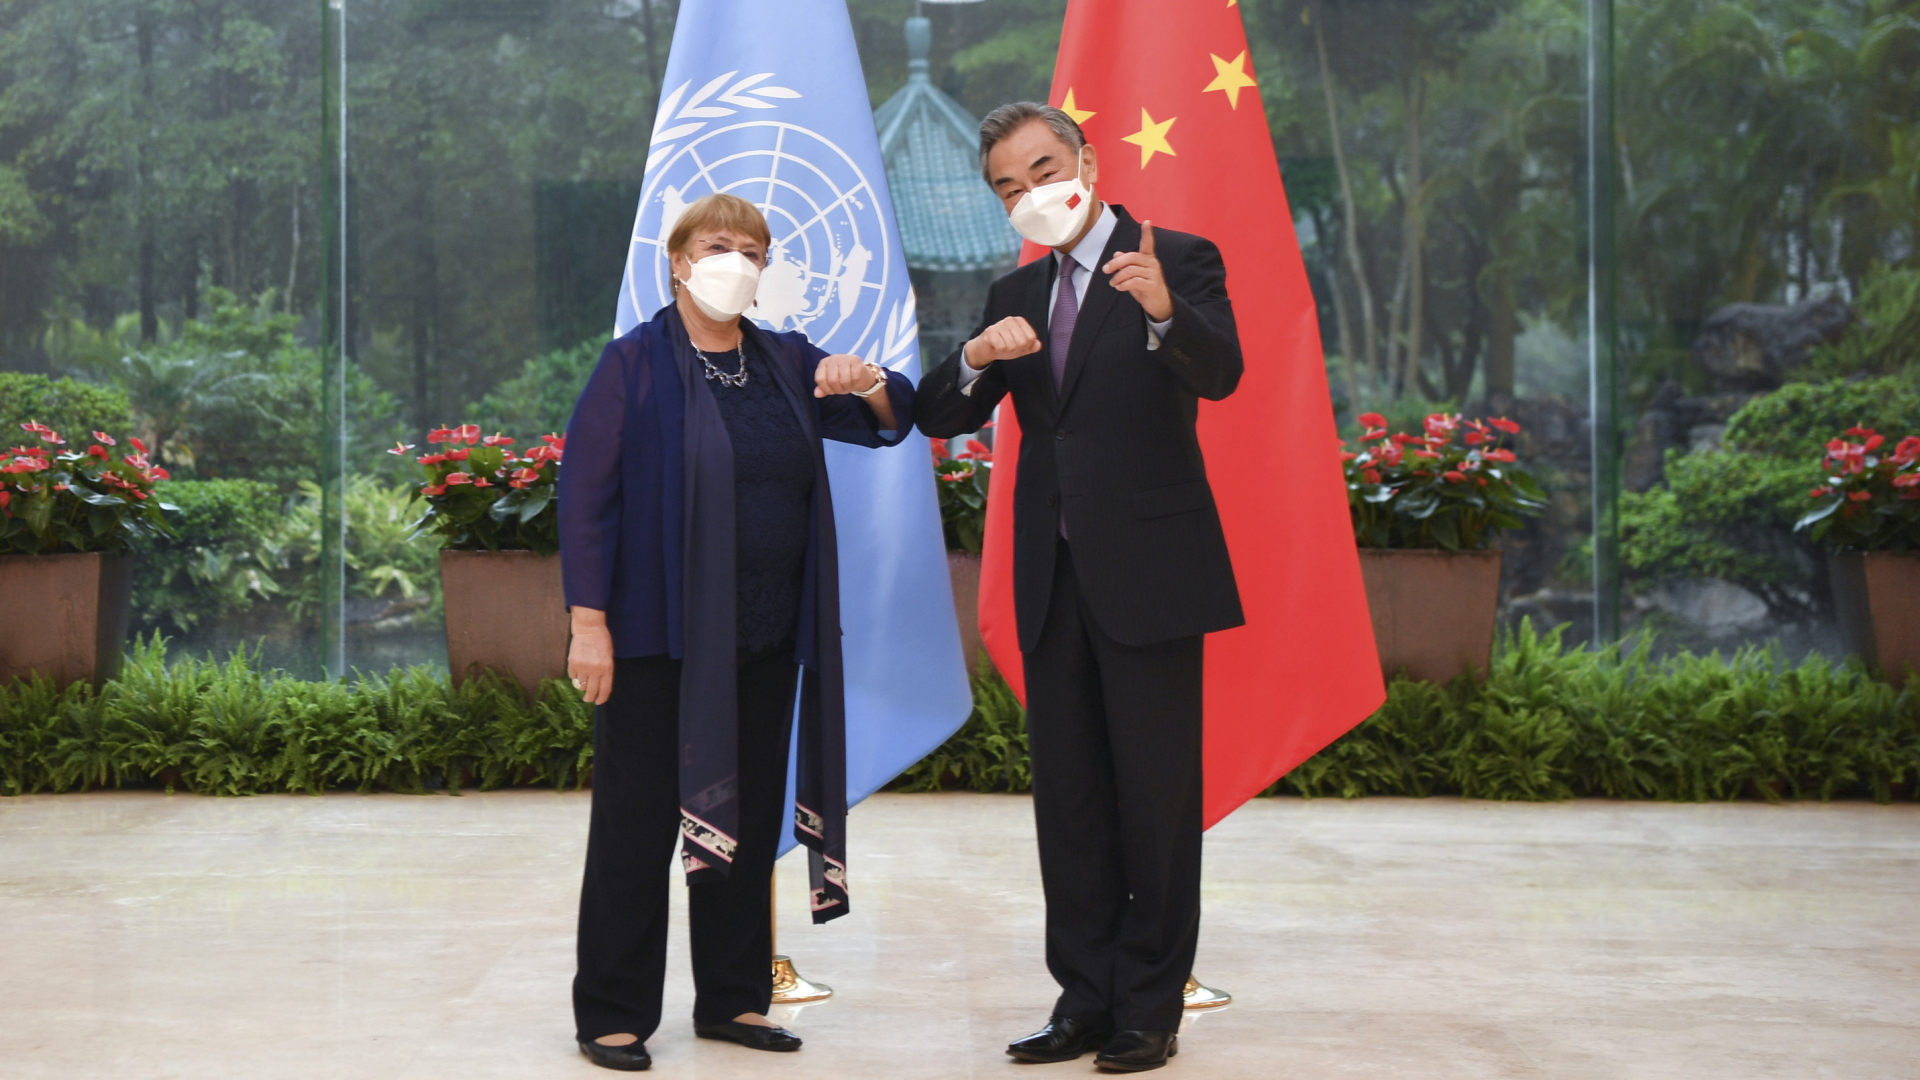 UN-Menchenschrechtskommissarin Michelle Bachelet und der chinesische Außenminister Wang Yi | AP